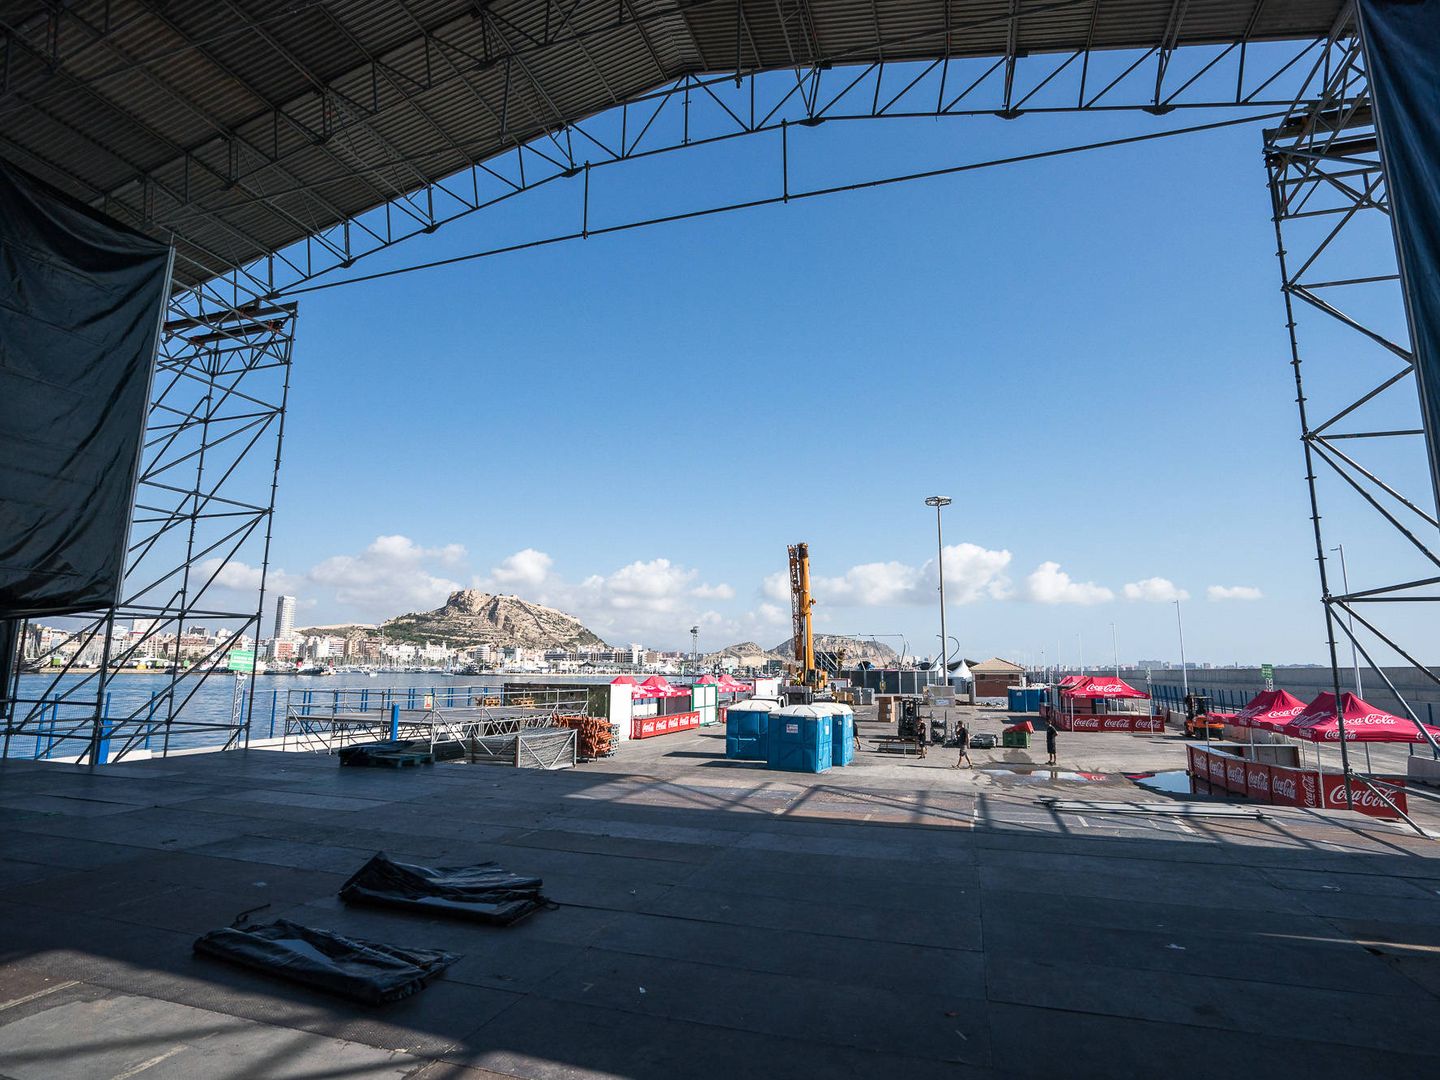 Imagen del escenario levantado en el 'Race Village' montado en el Puerto de Alicante. (Álex Postigo/Alicante Puerto de Salida)